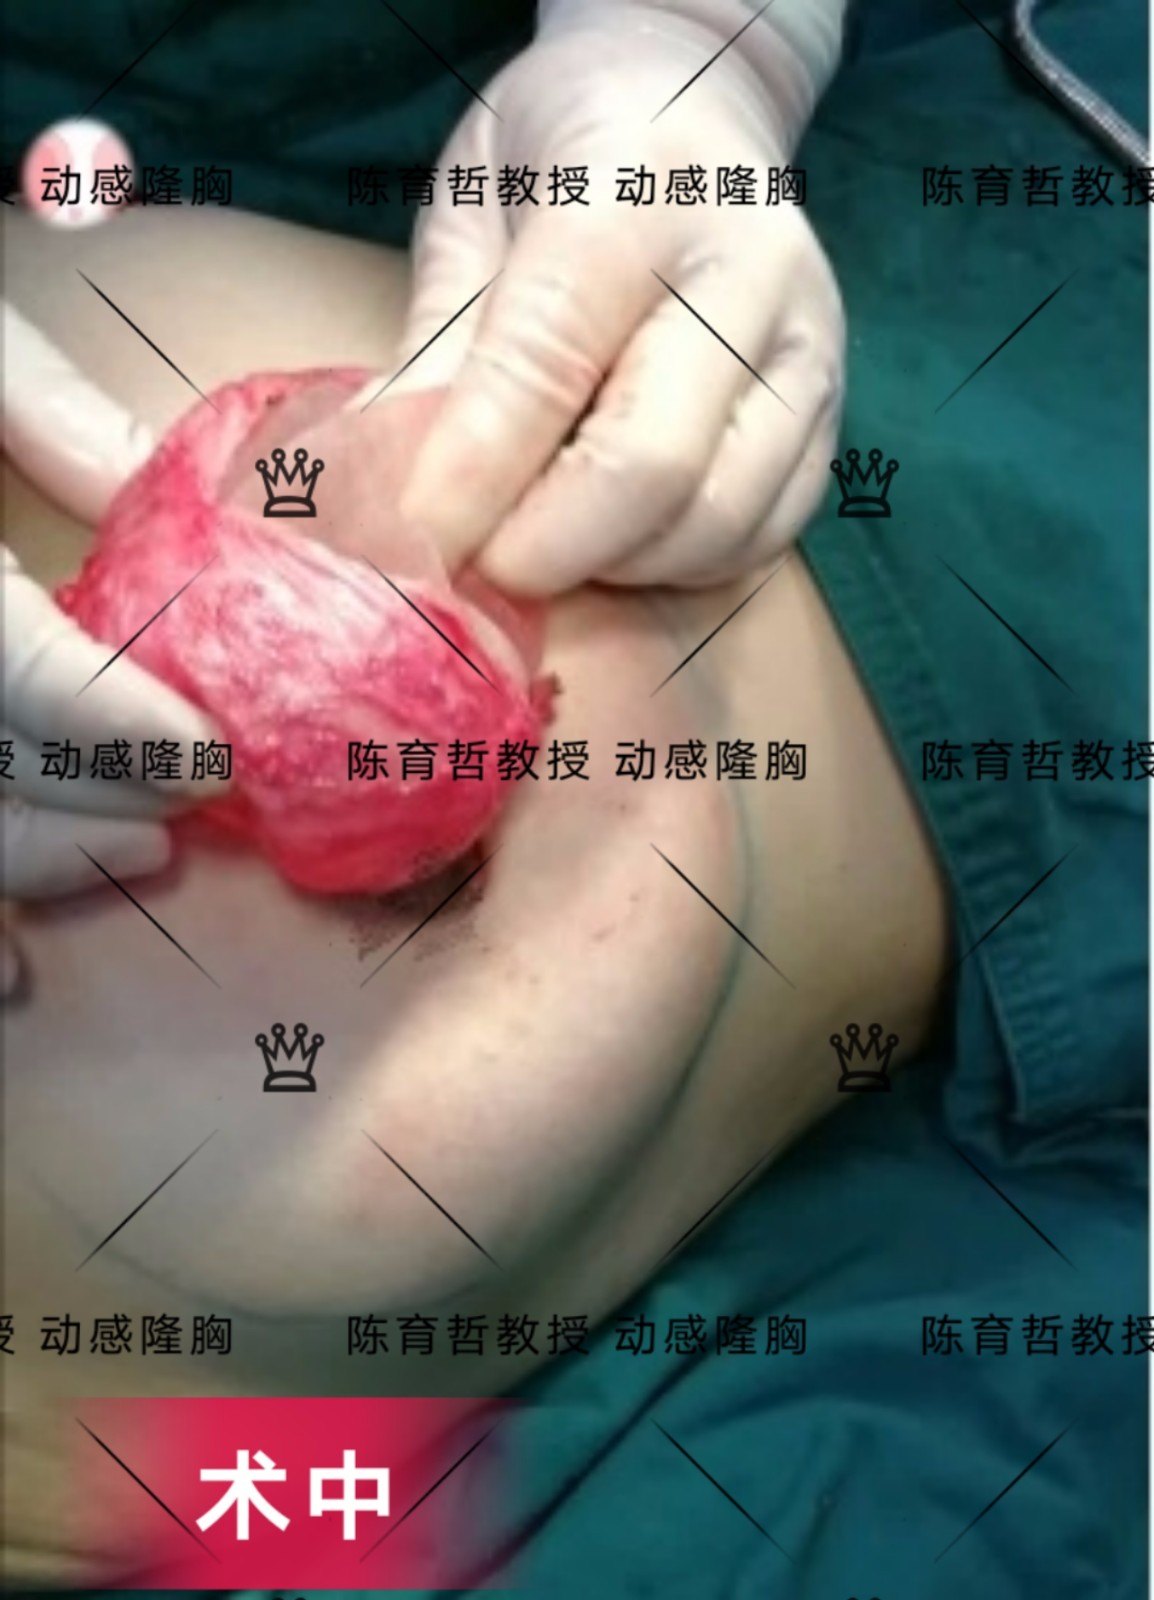 动感隆胸案例(36)注射物取出再植入假体的包膜